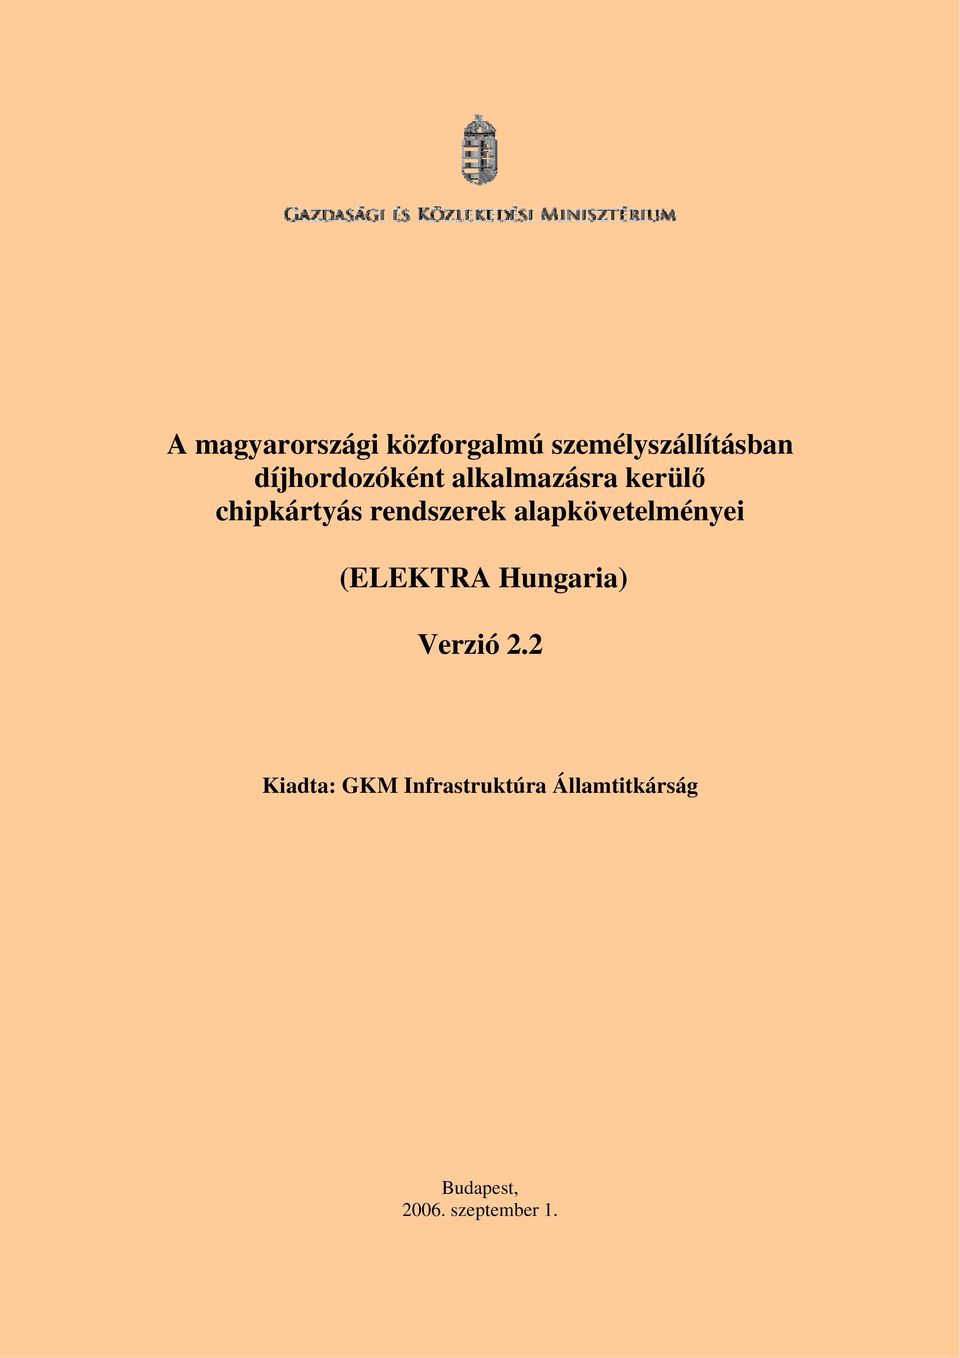 rendszerek alapkövetelményei (ELEKTRA Hungaria) Verzió 2.